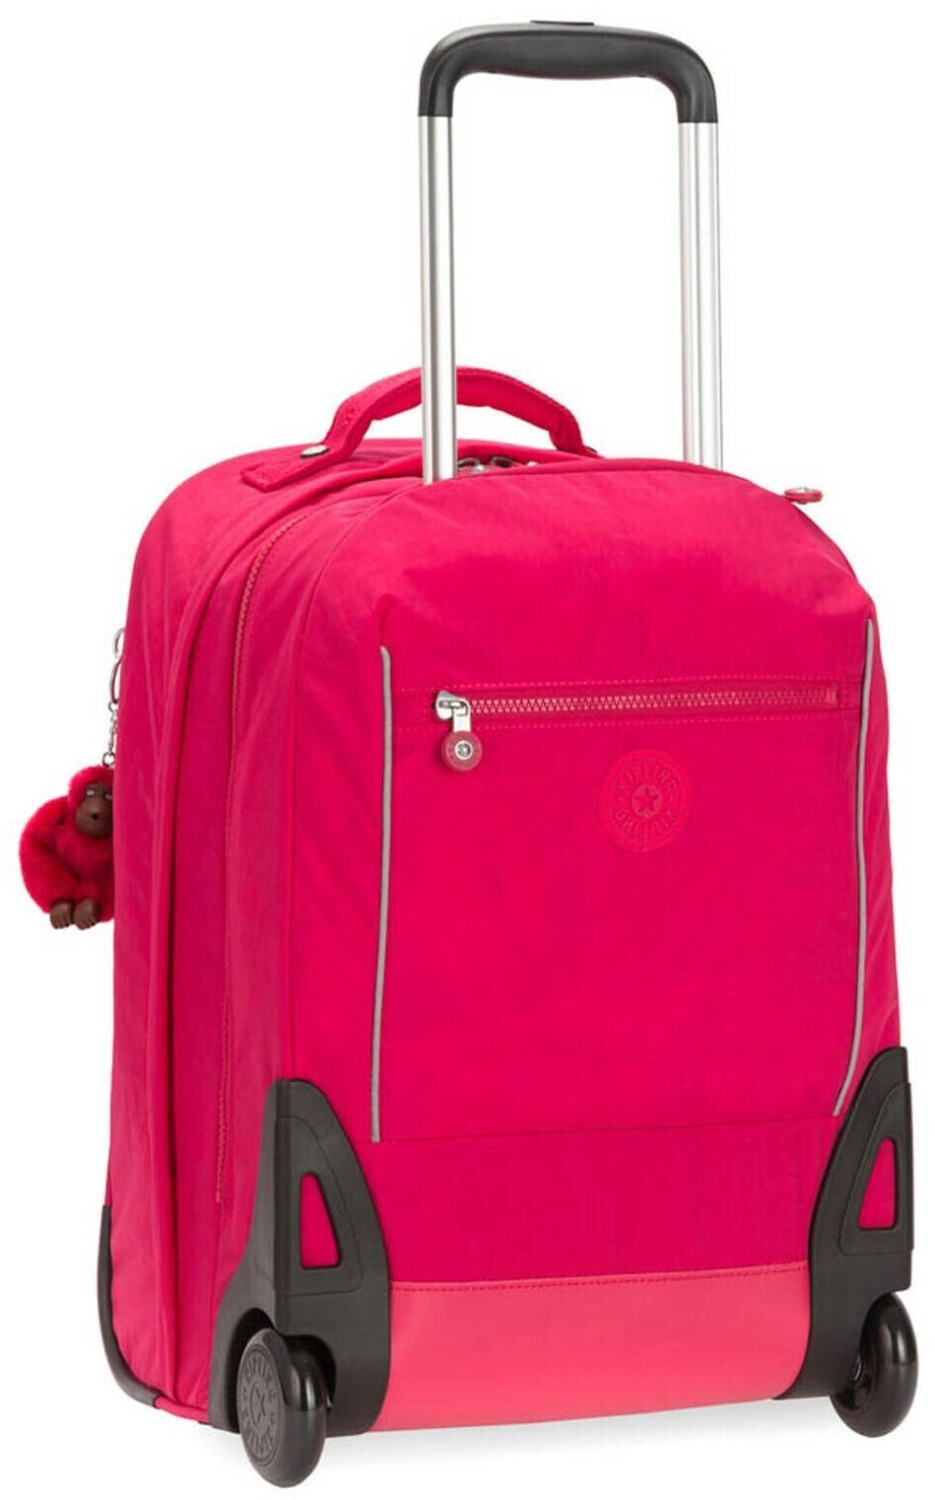 Photos - Backpack Kipling Sari Trolley  true pink 